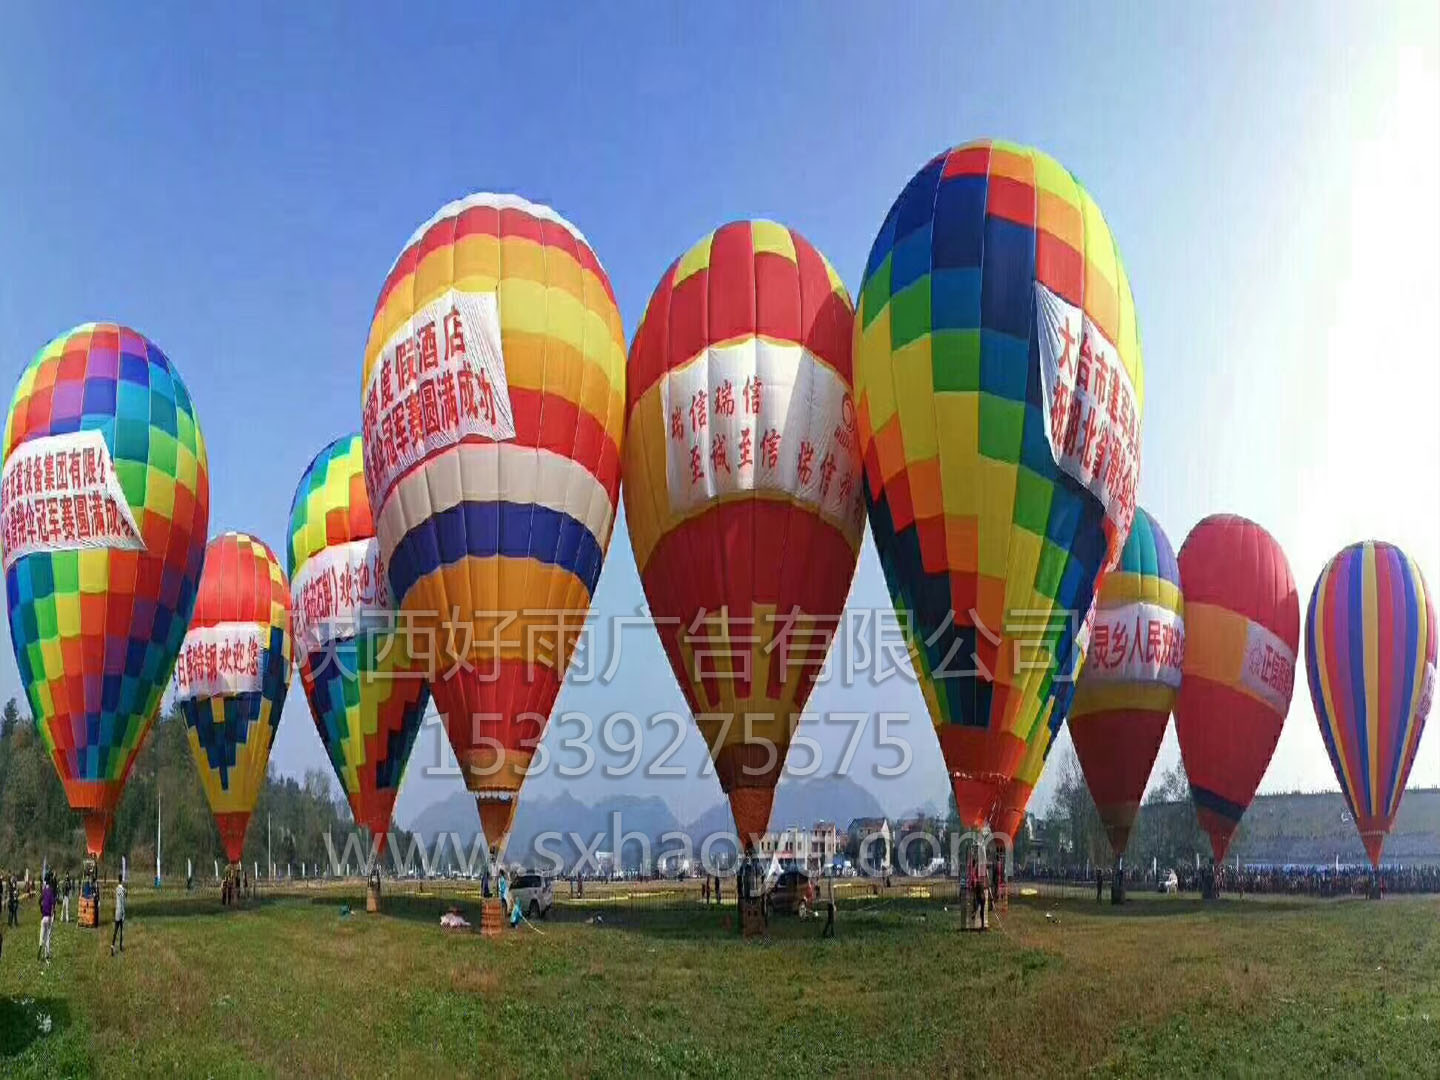 西安广告飞行伞滑翔伞广告热气球西安飞行伞滑翔机动力伞热气球 西安广告飞行伞滑翔伞广告热气球